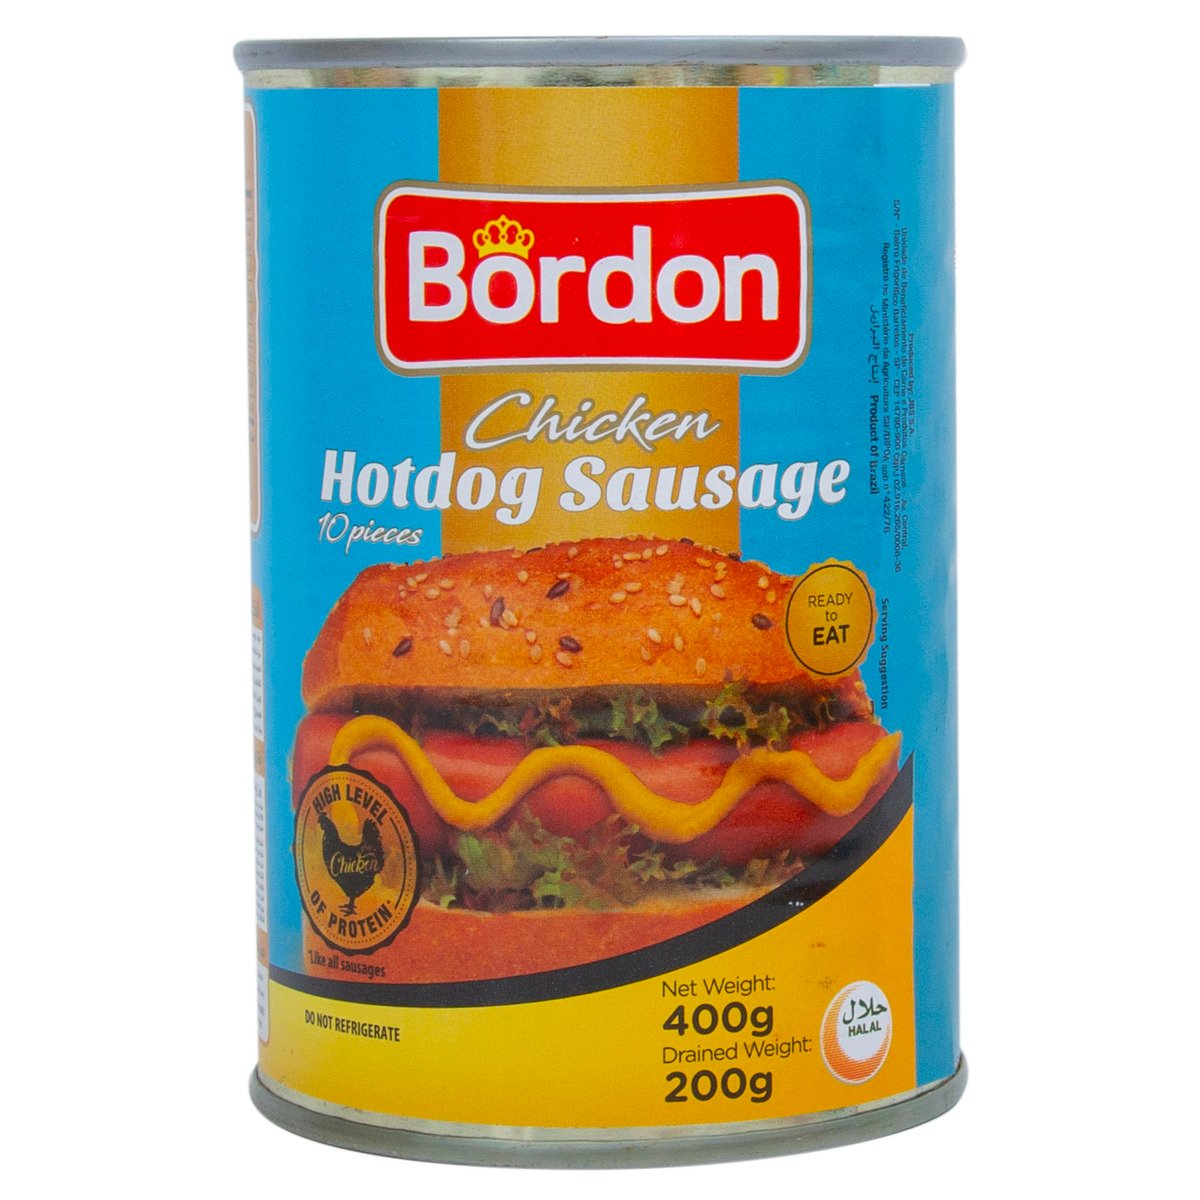 Bordon Hotdog Sausage 400g